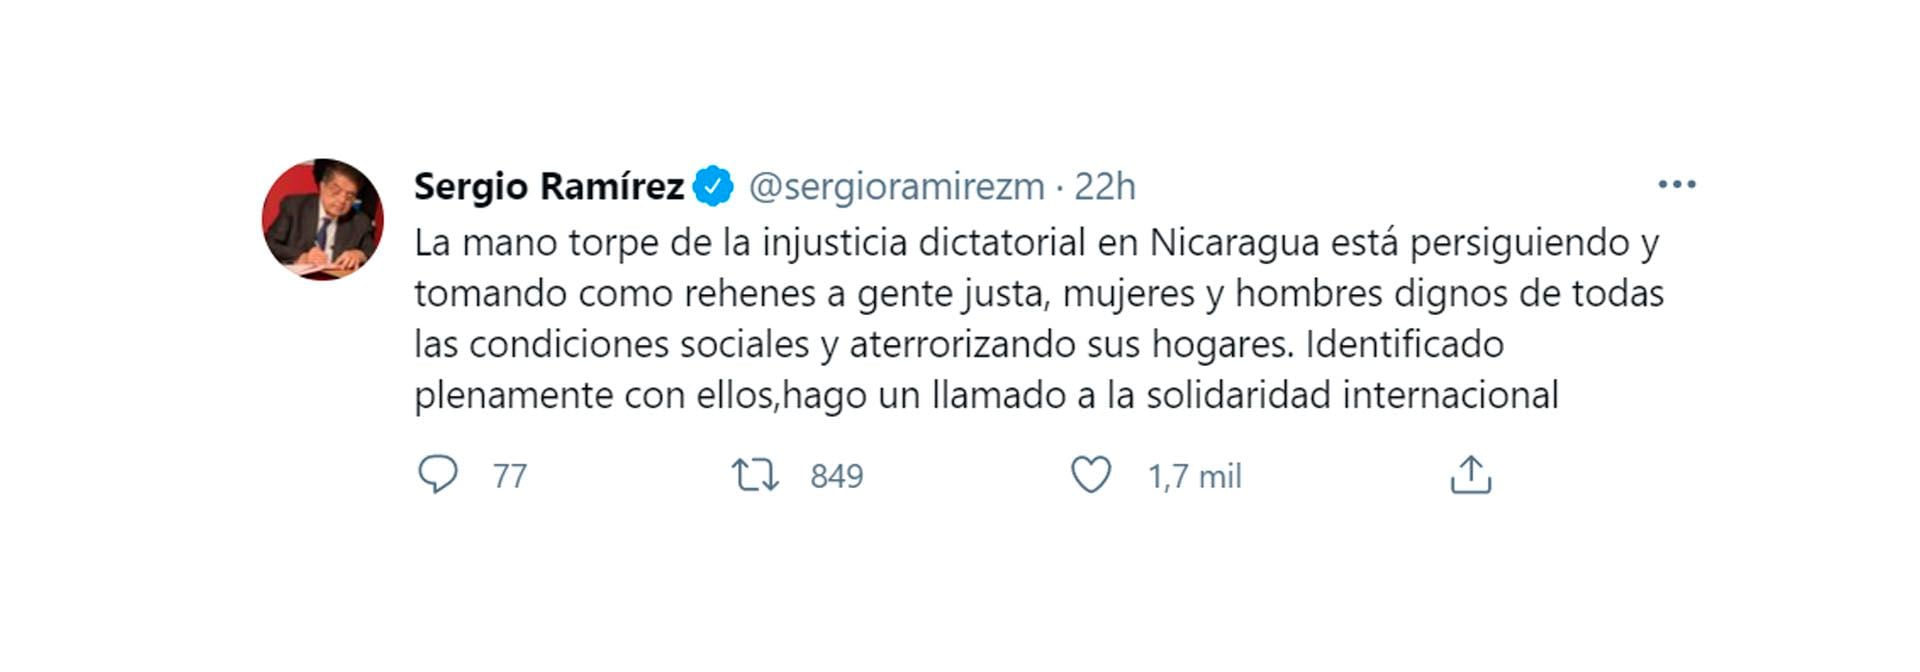 El tuit de Sergio Ramírez